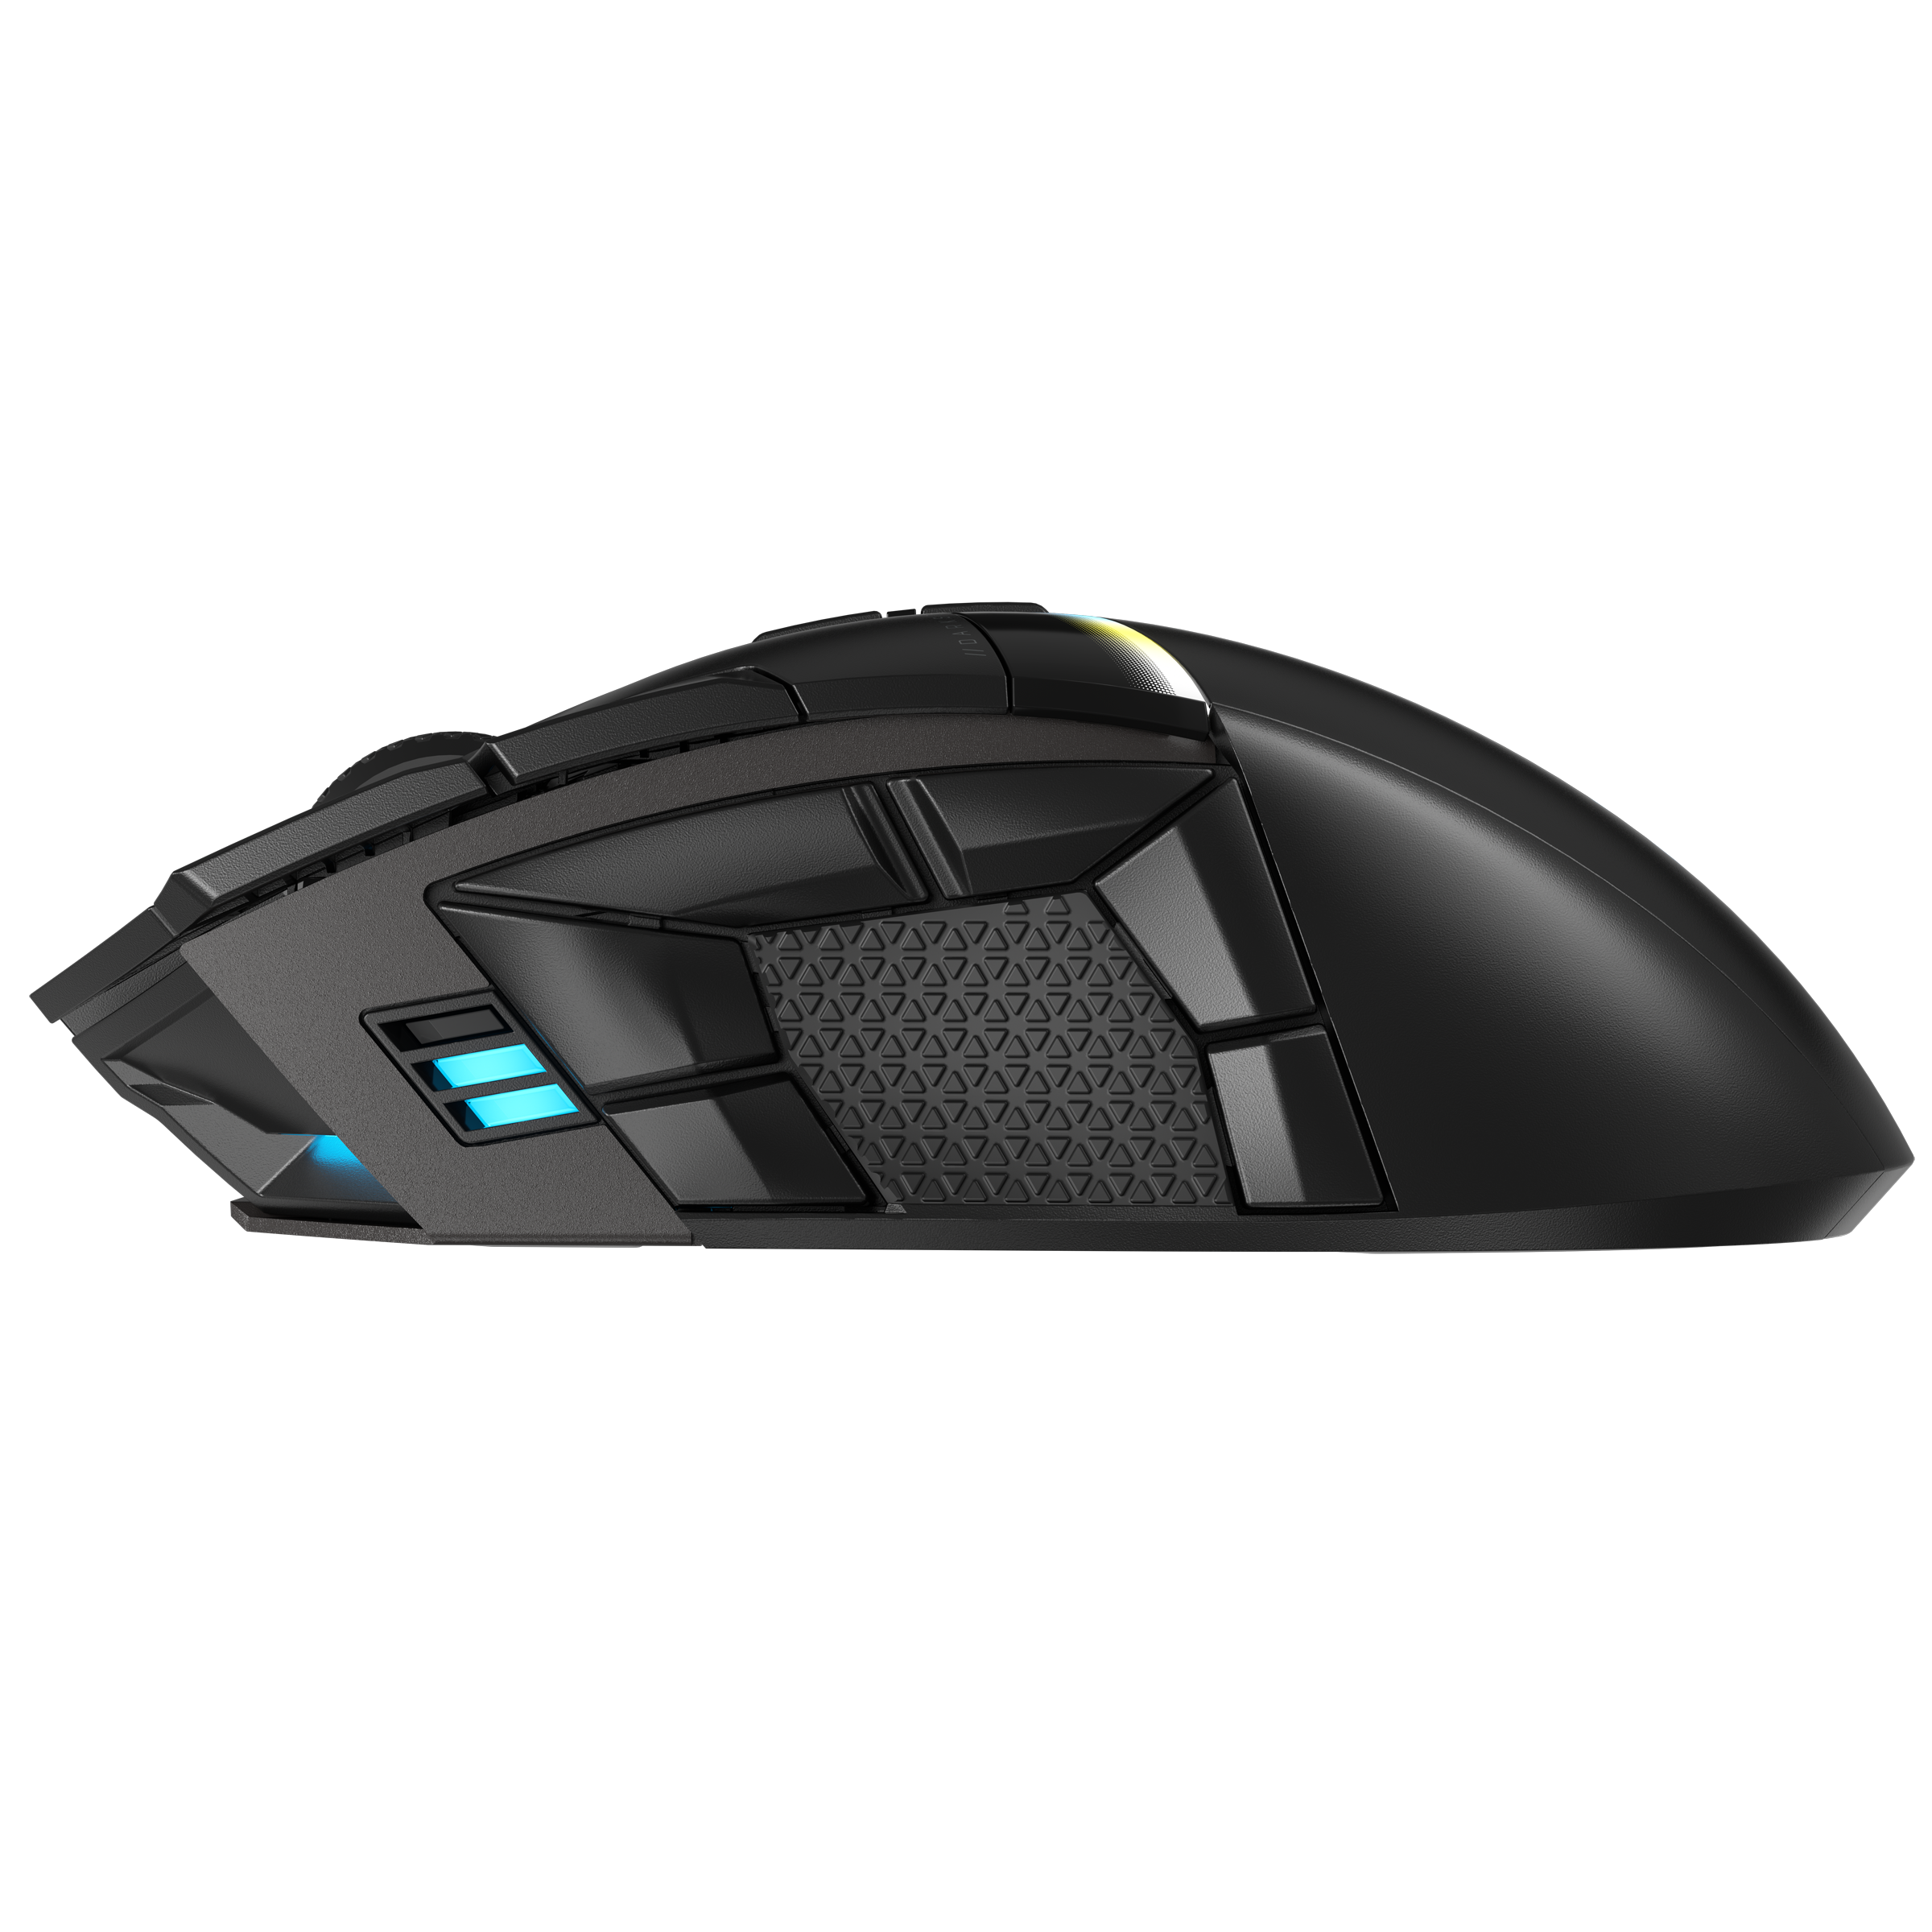 Corsair Gaming-Maus »DARKSTAR WIRELESS«, Bluetooth, 6-Tasten Seitencluster  auf Rechnung kaufen | PC-Mäuse